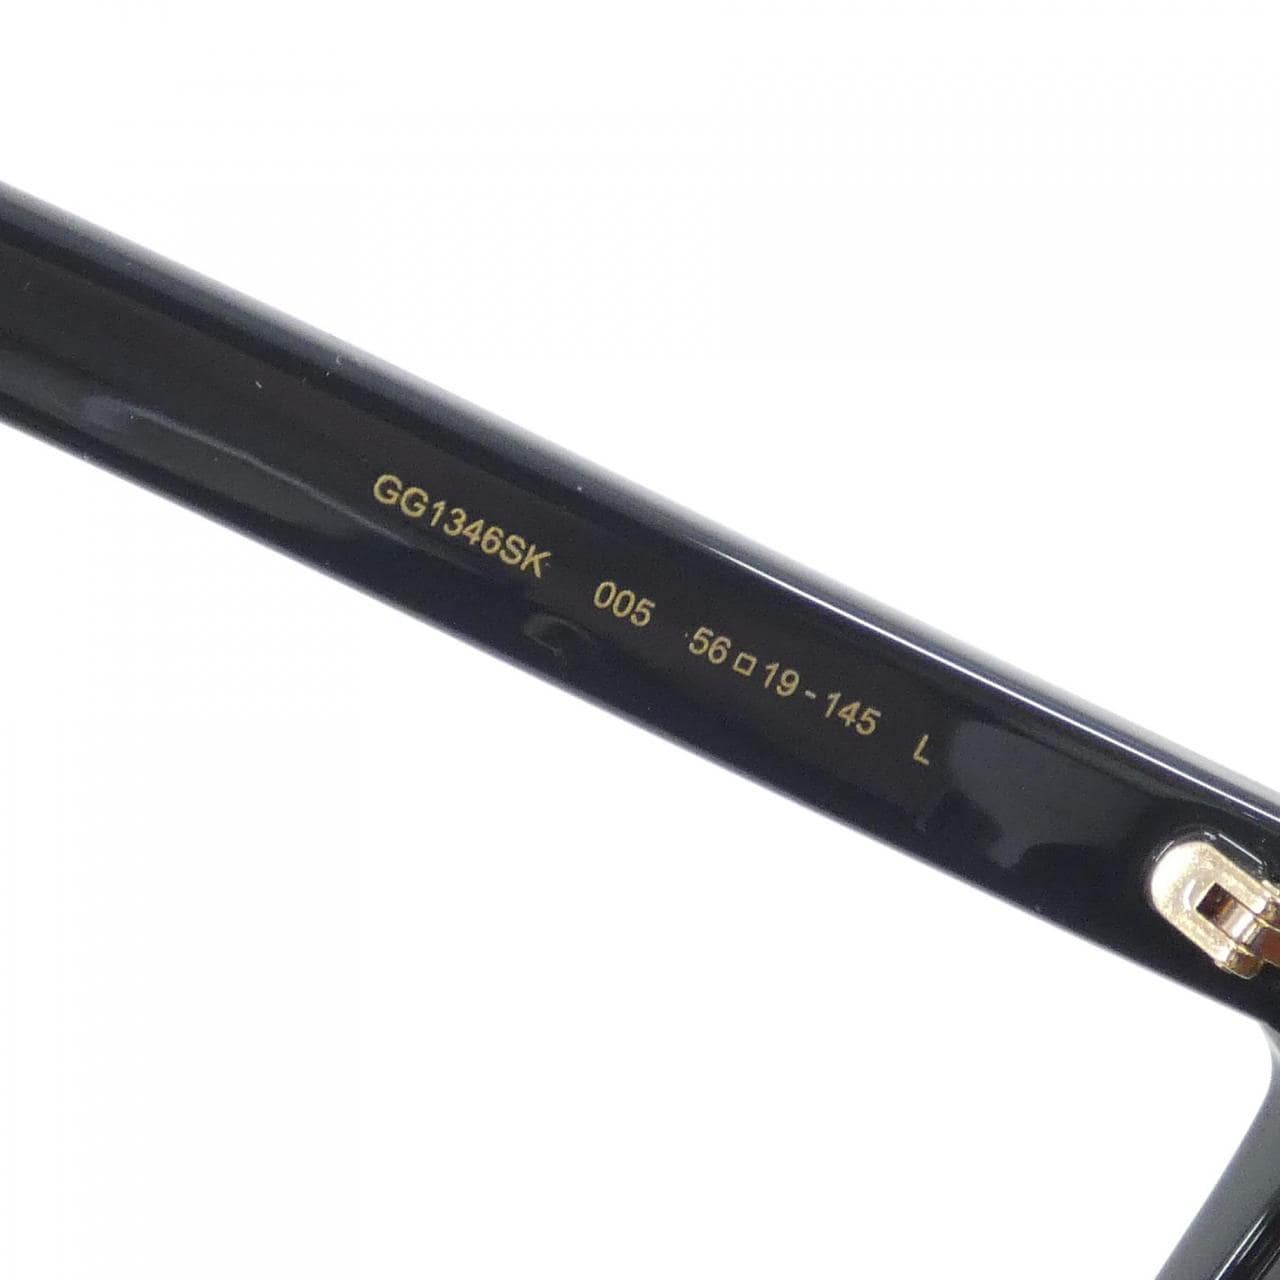 [BRAND NEW] Gucci 1346SK Sunglasses